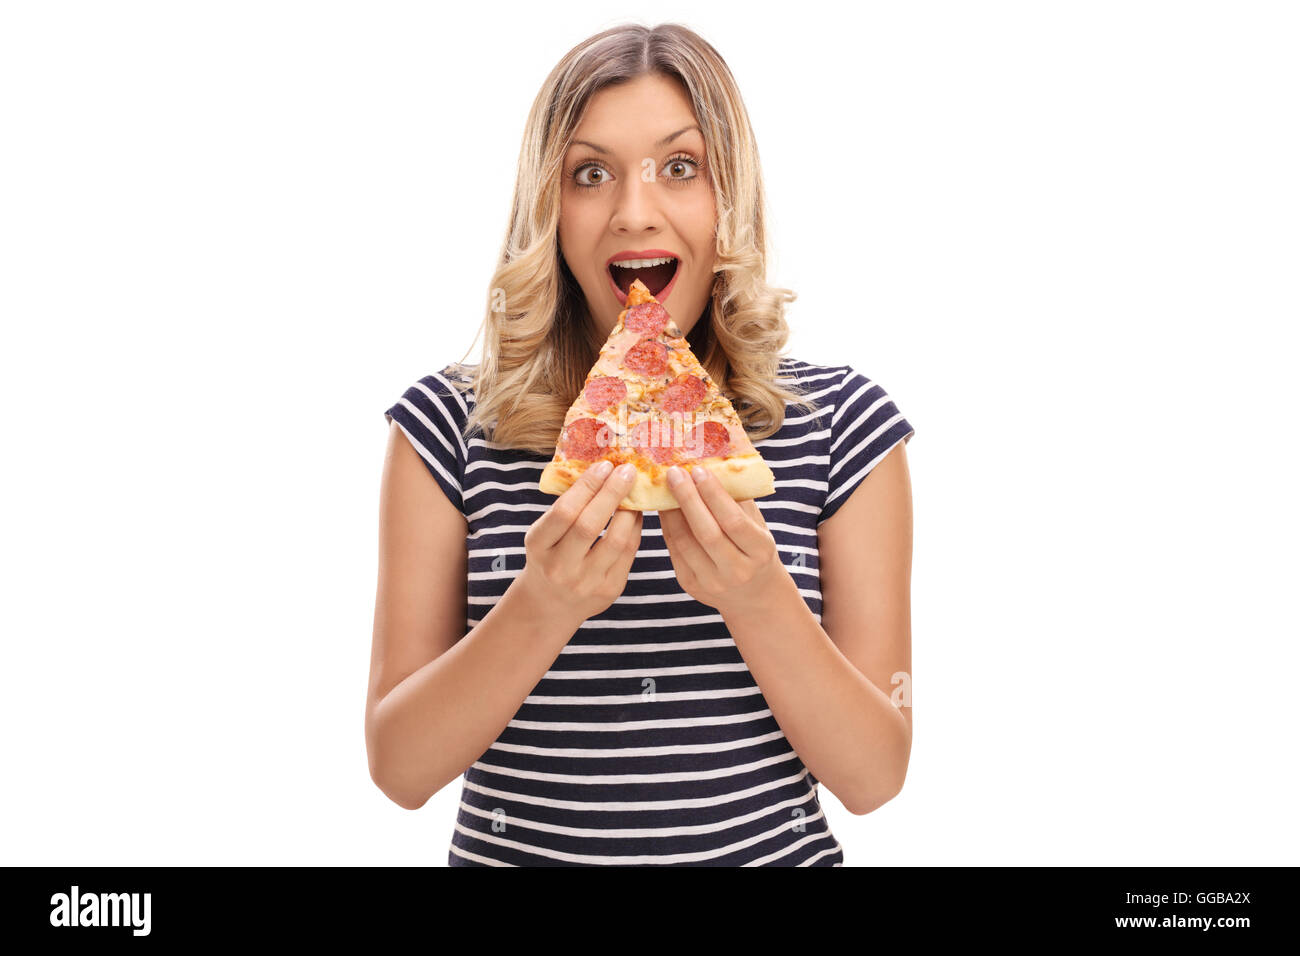 Junge Frau mit einem Stück Pizza und schaut in die Kamera, die isoliert auf weißem Hintergrund Stockfoto